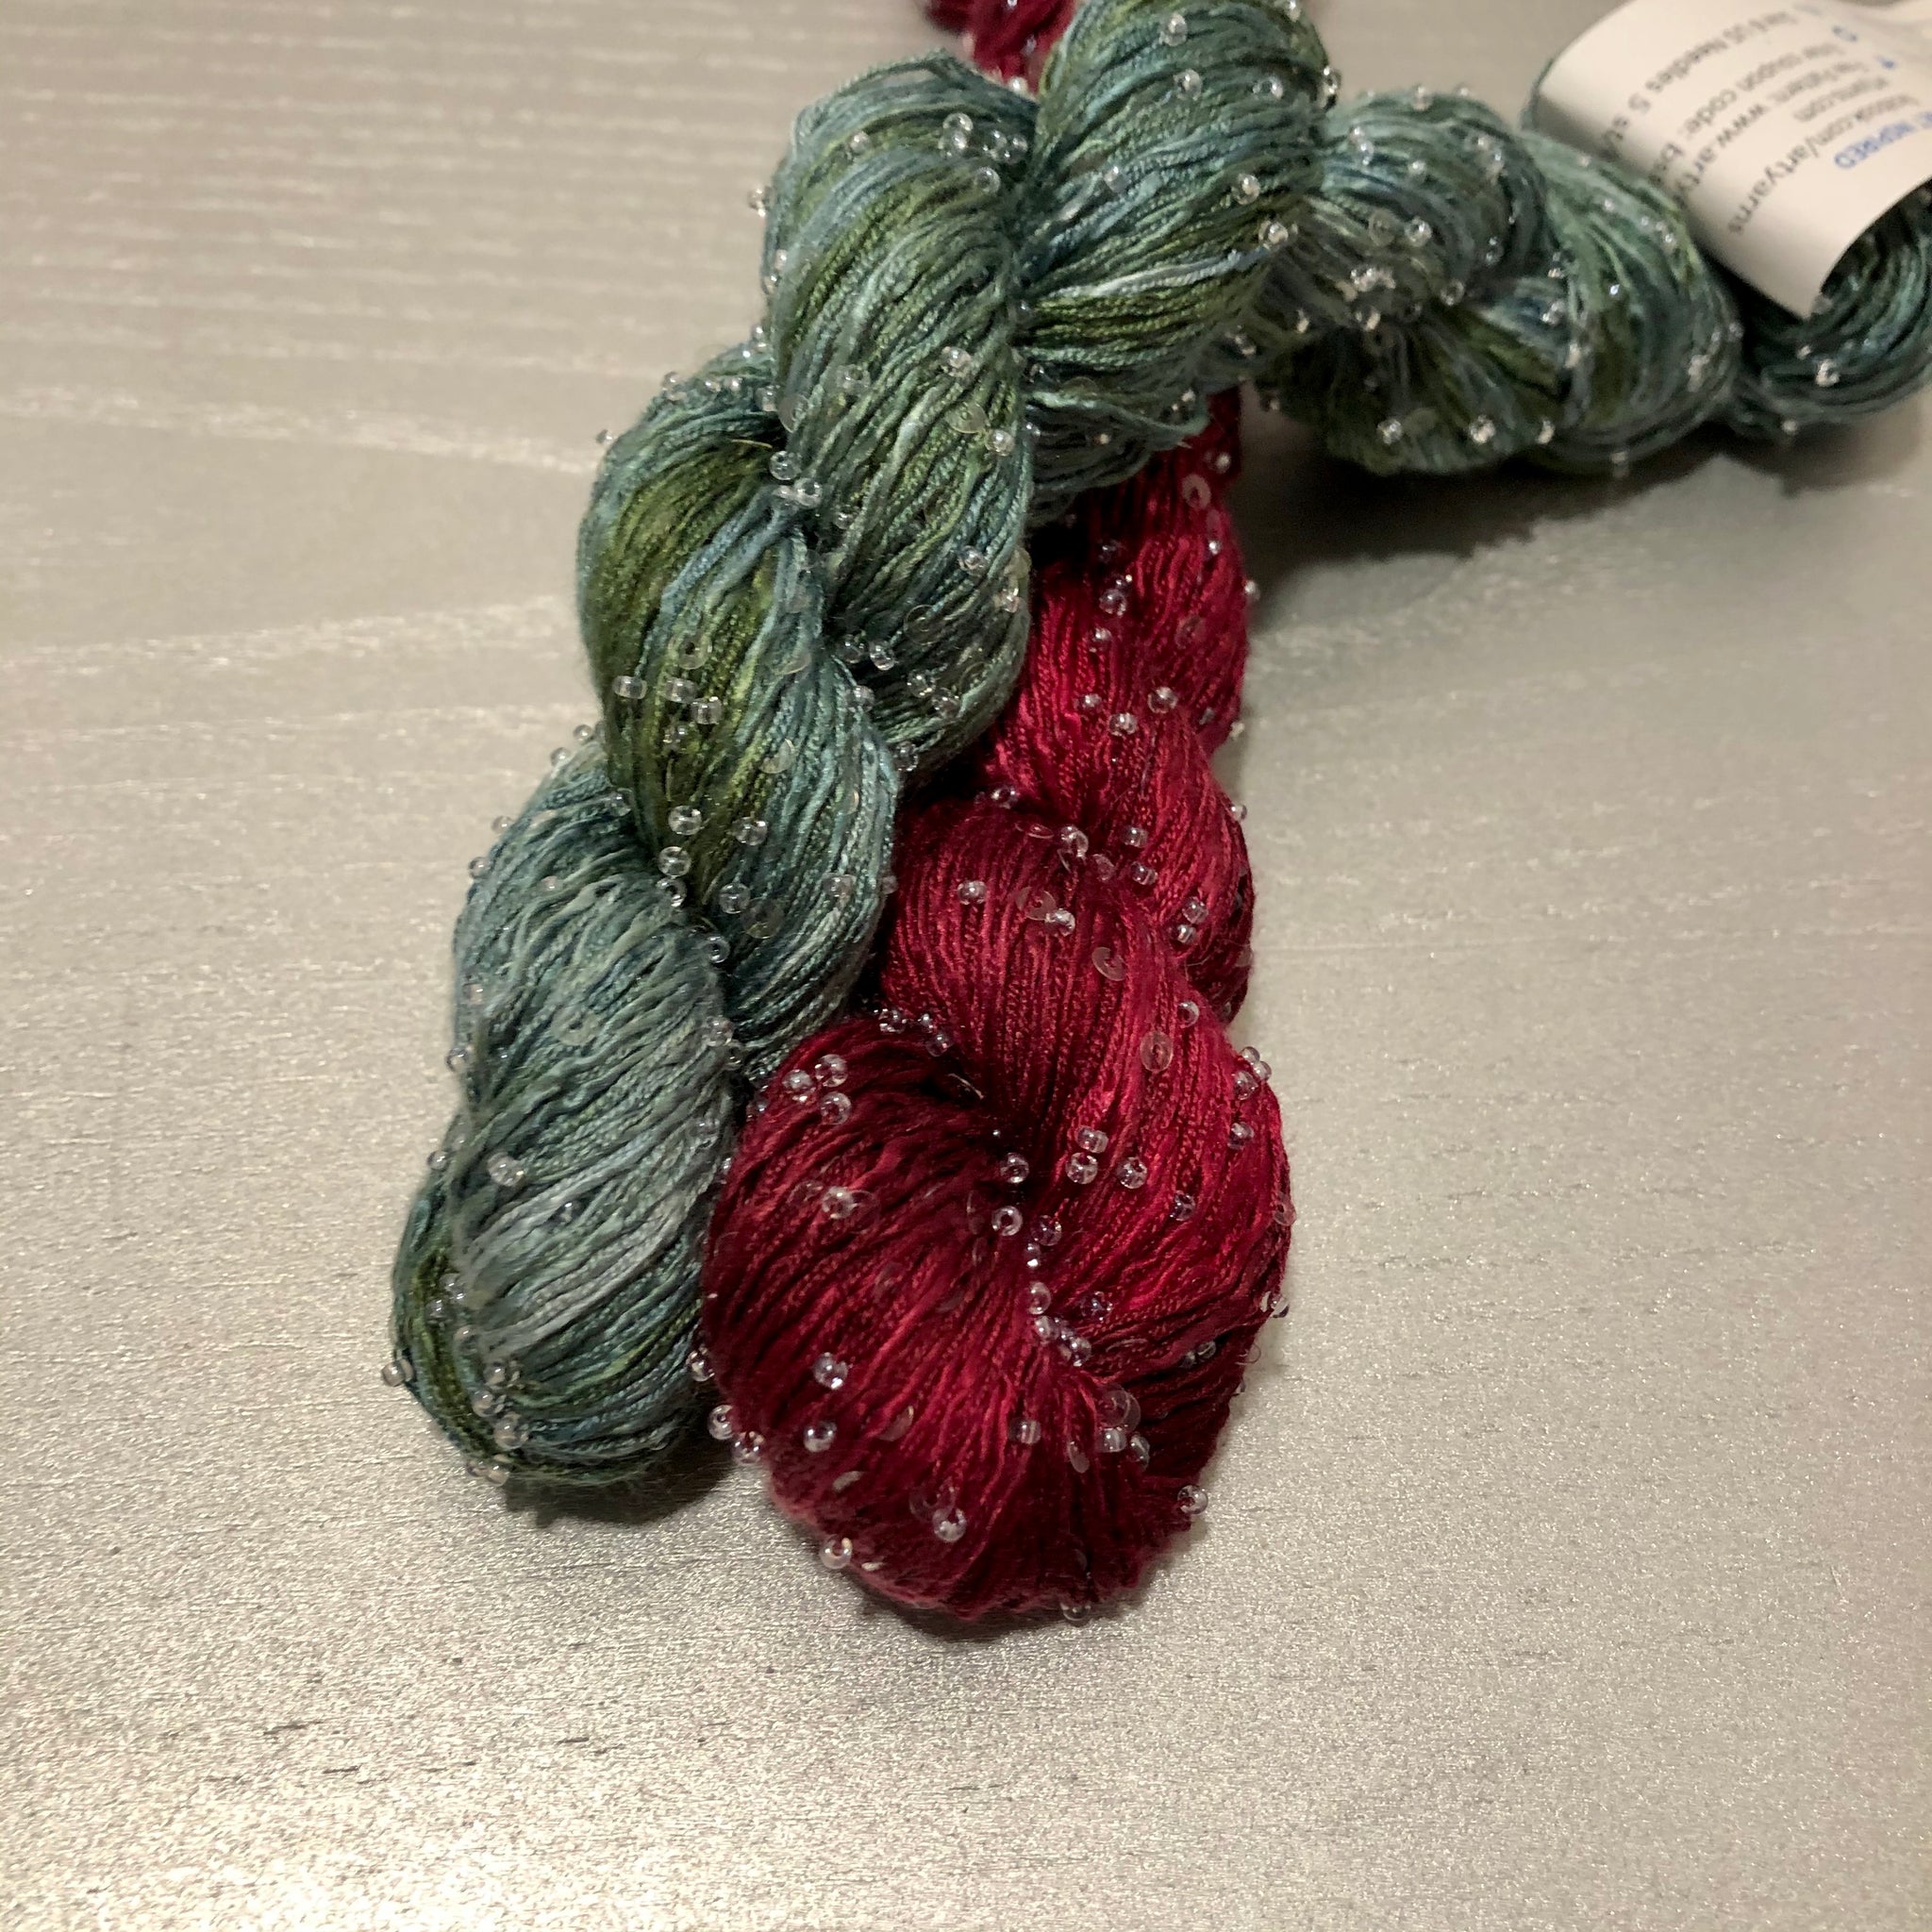 Cranberry Juniper beads only